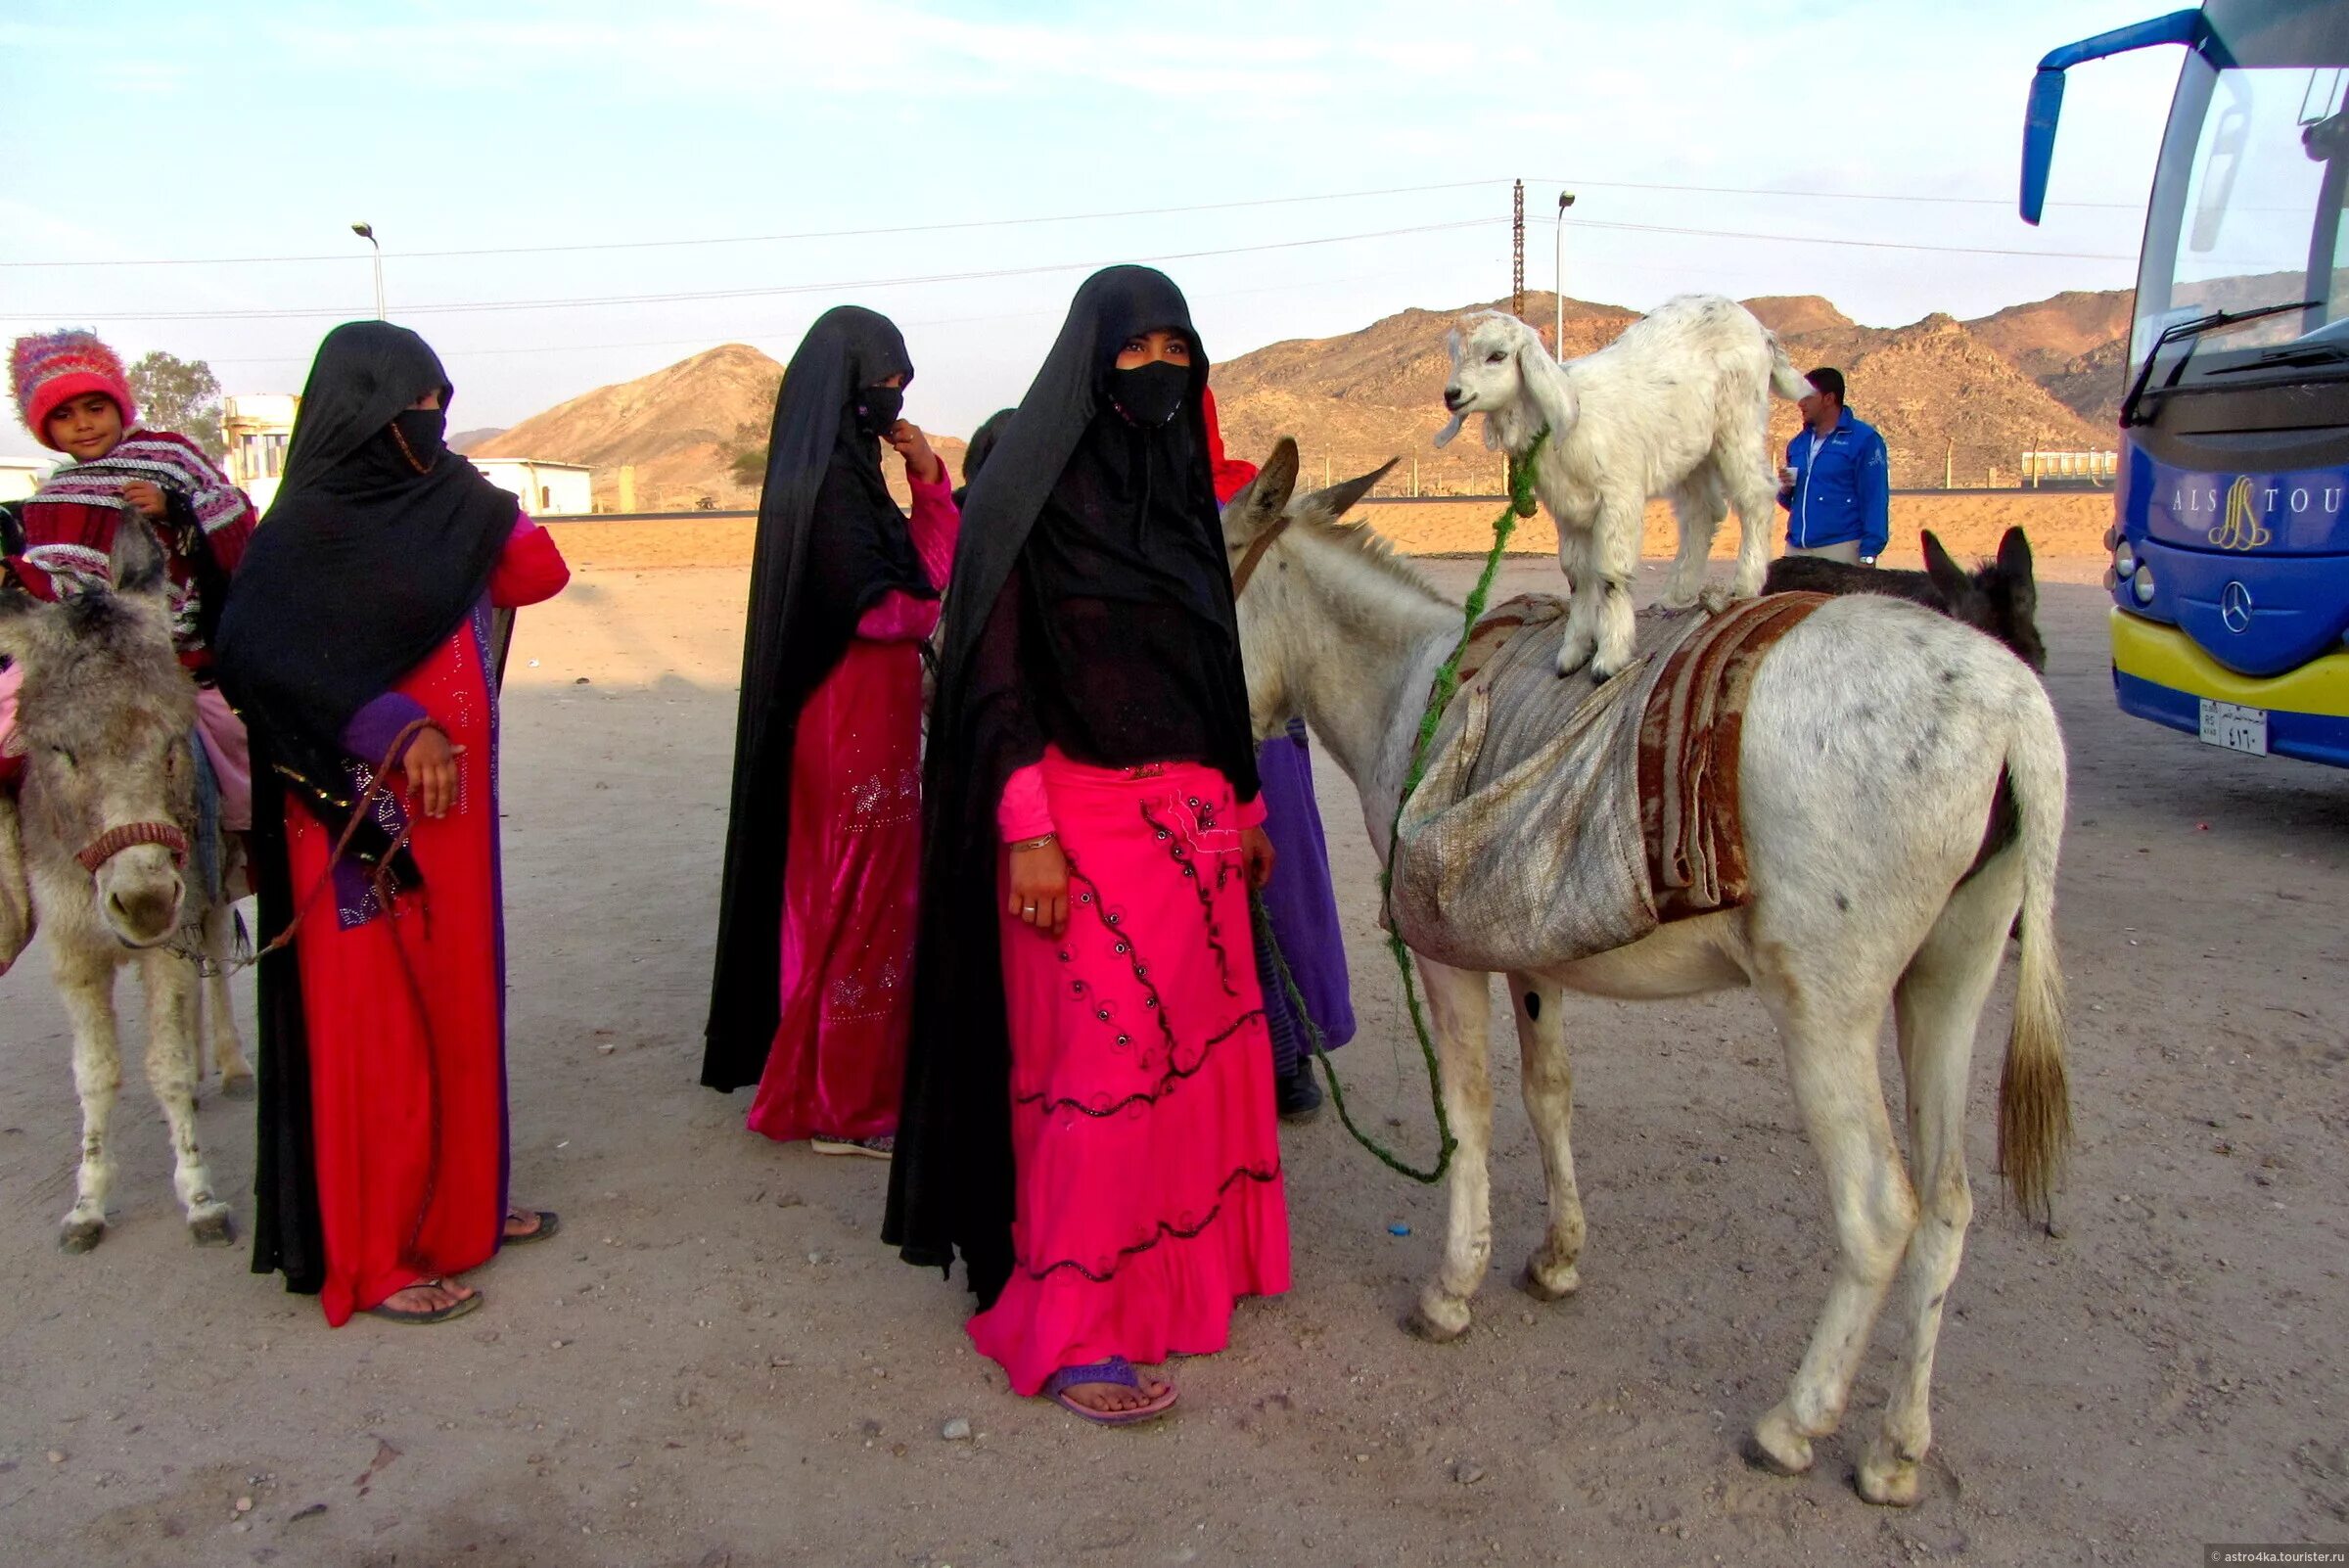 Верхняя одежда бедуинов 6 букв. Бедуины Саудовской Аравии. Бедуины в Египте. Бедуины в пустыне Египта. Жители пустыни бедуины Египет.